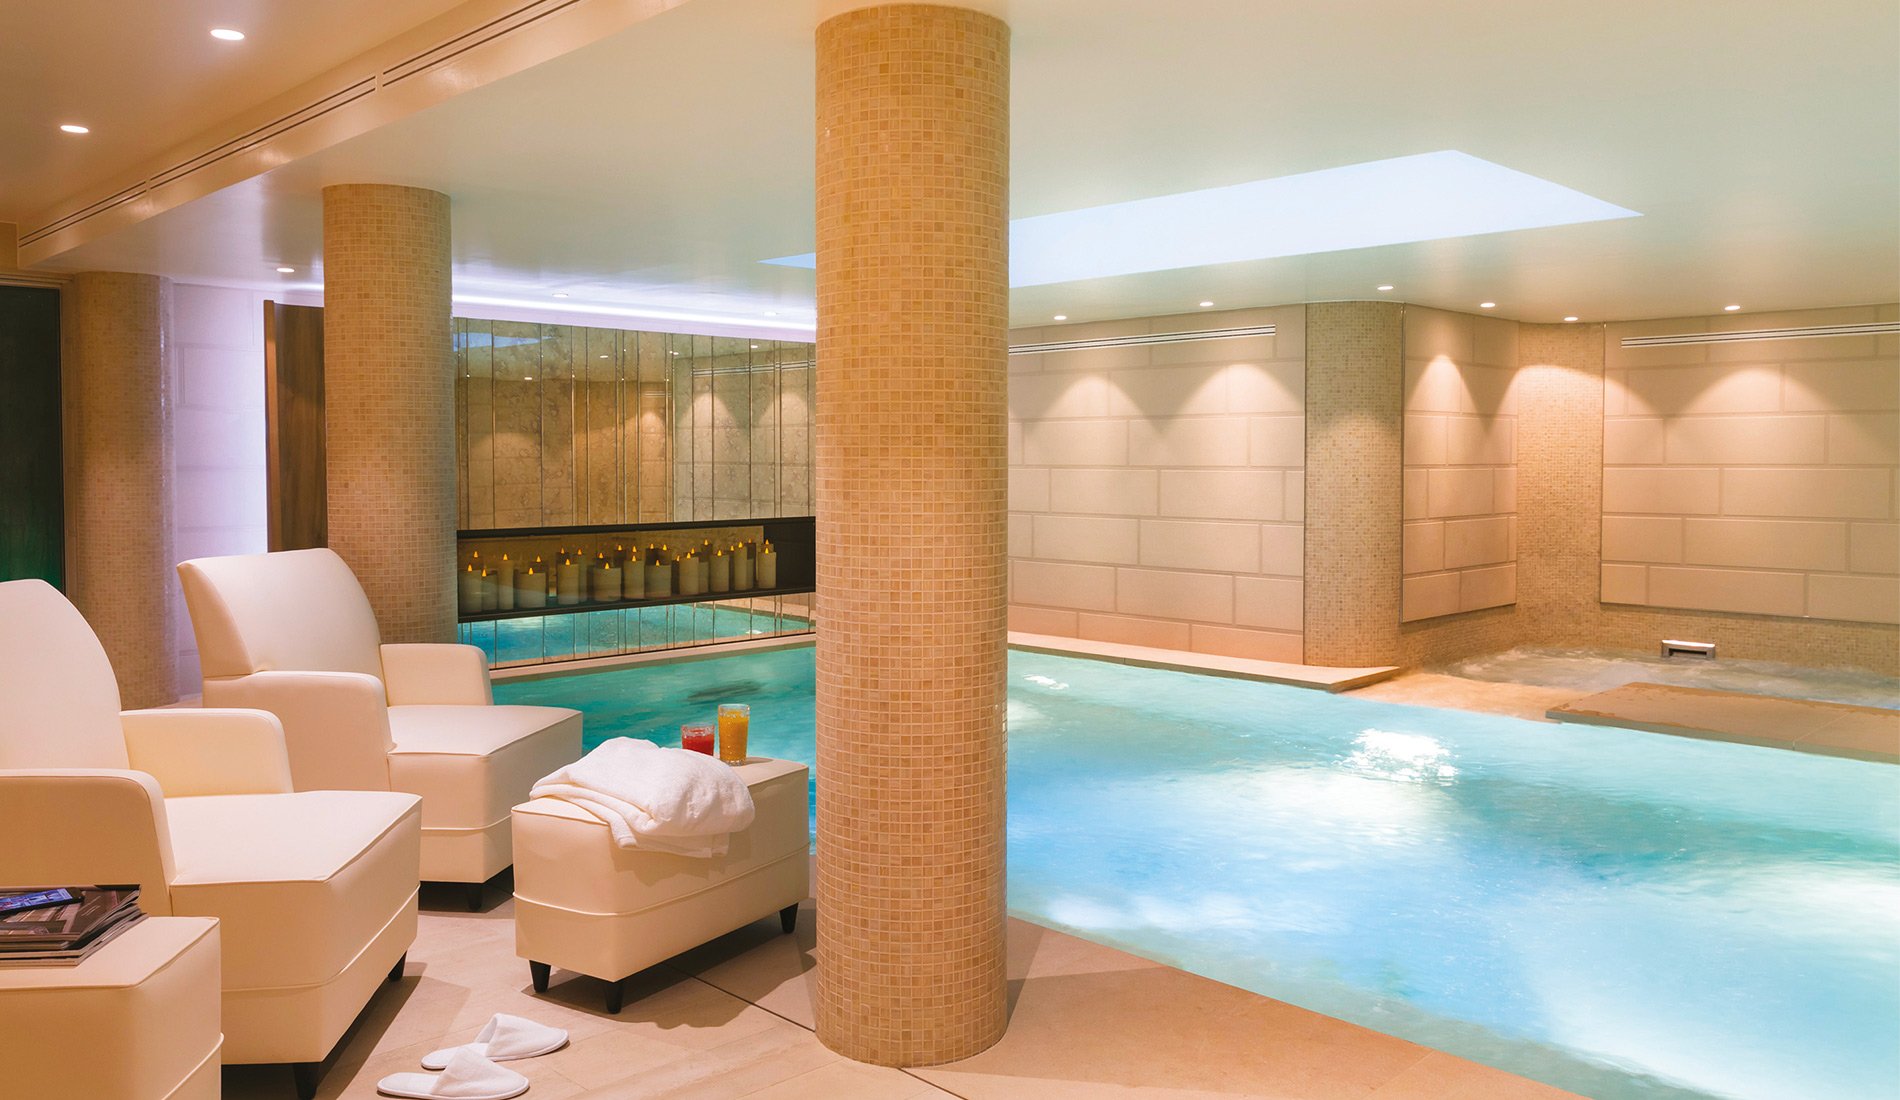 Luxury hotel - Maison Albar Hotels Le Pont-Neuf - 5-star - indoor pool